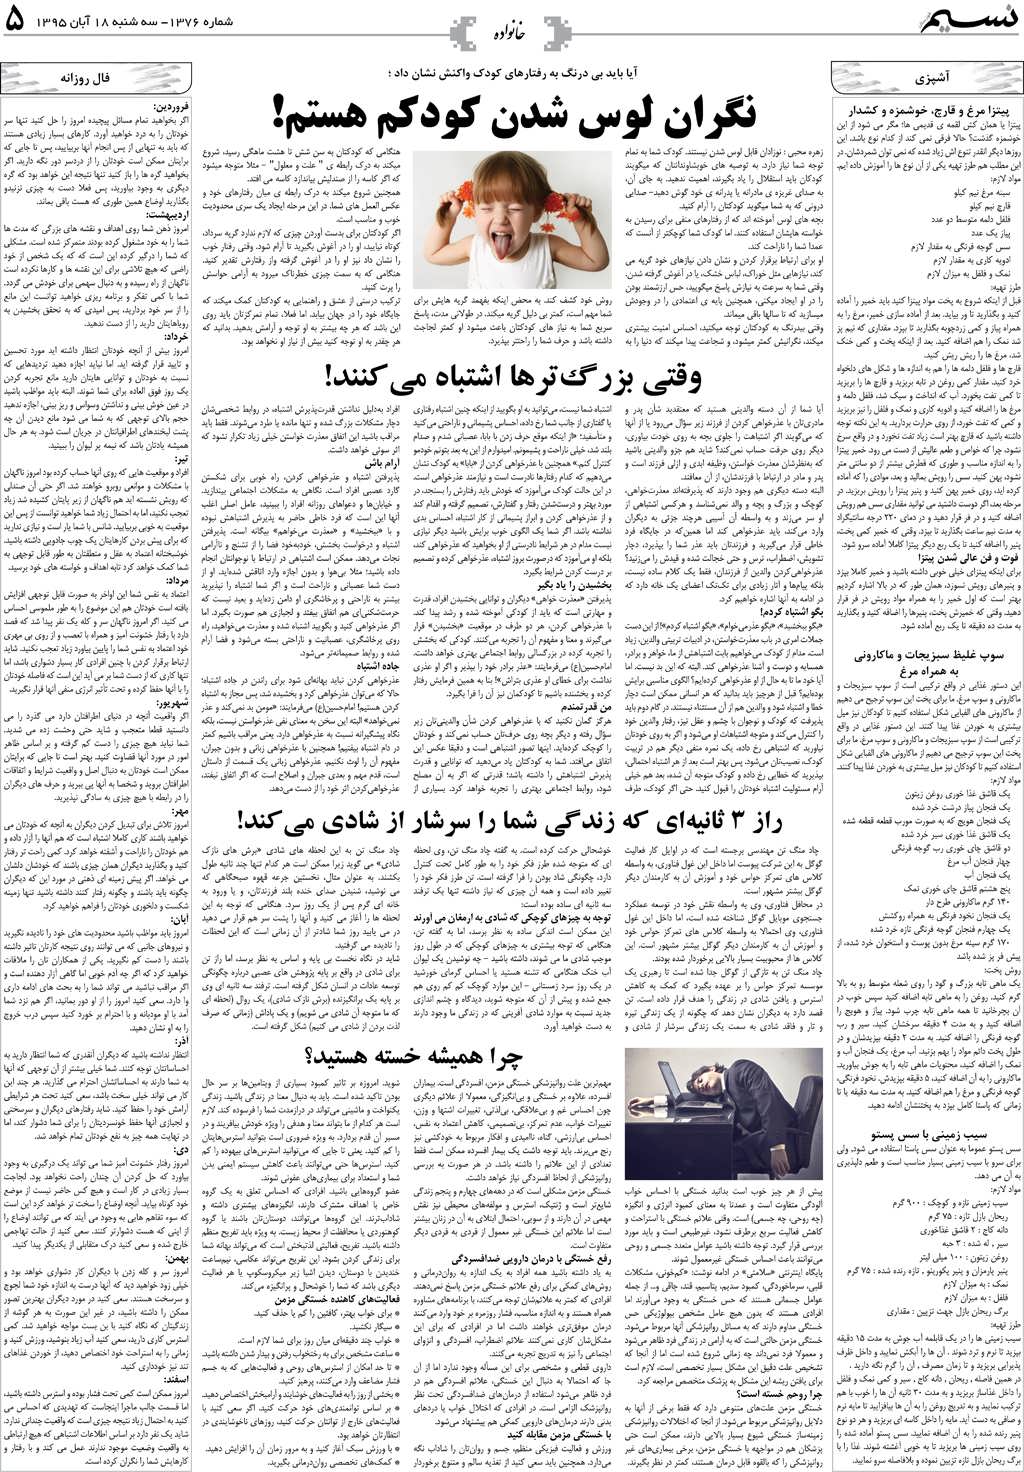 صفحه خانواده روزنامه نسیم شماره 1376